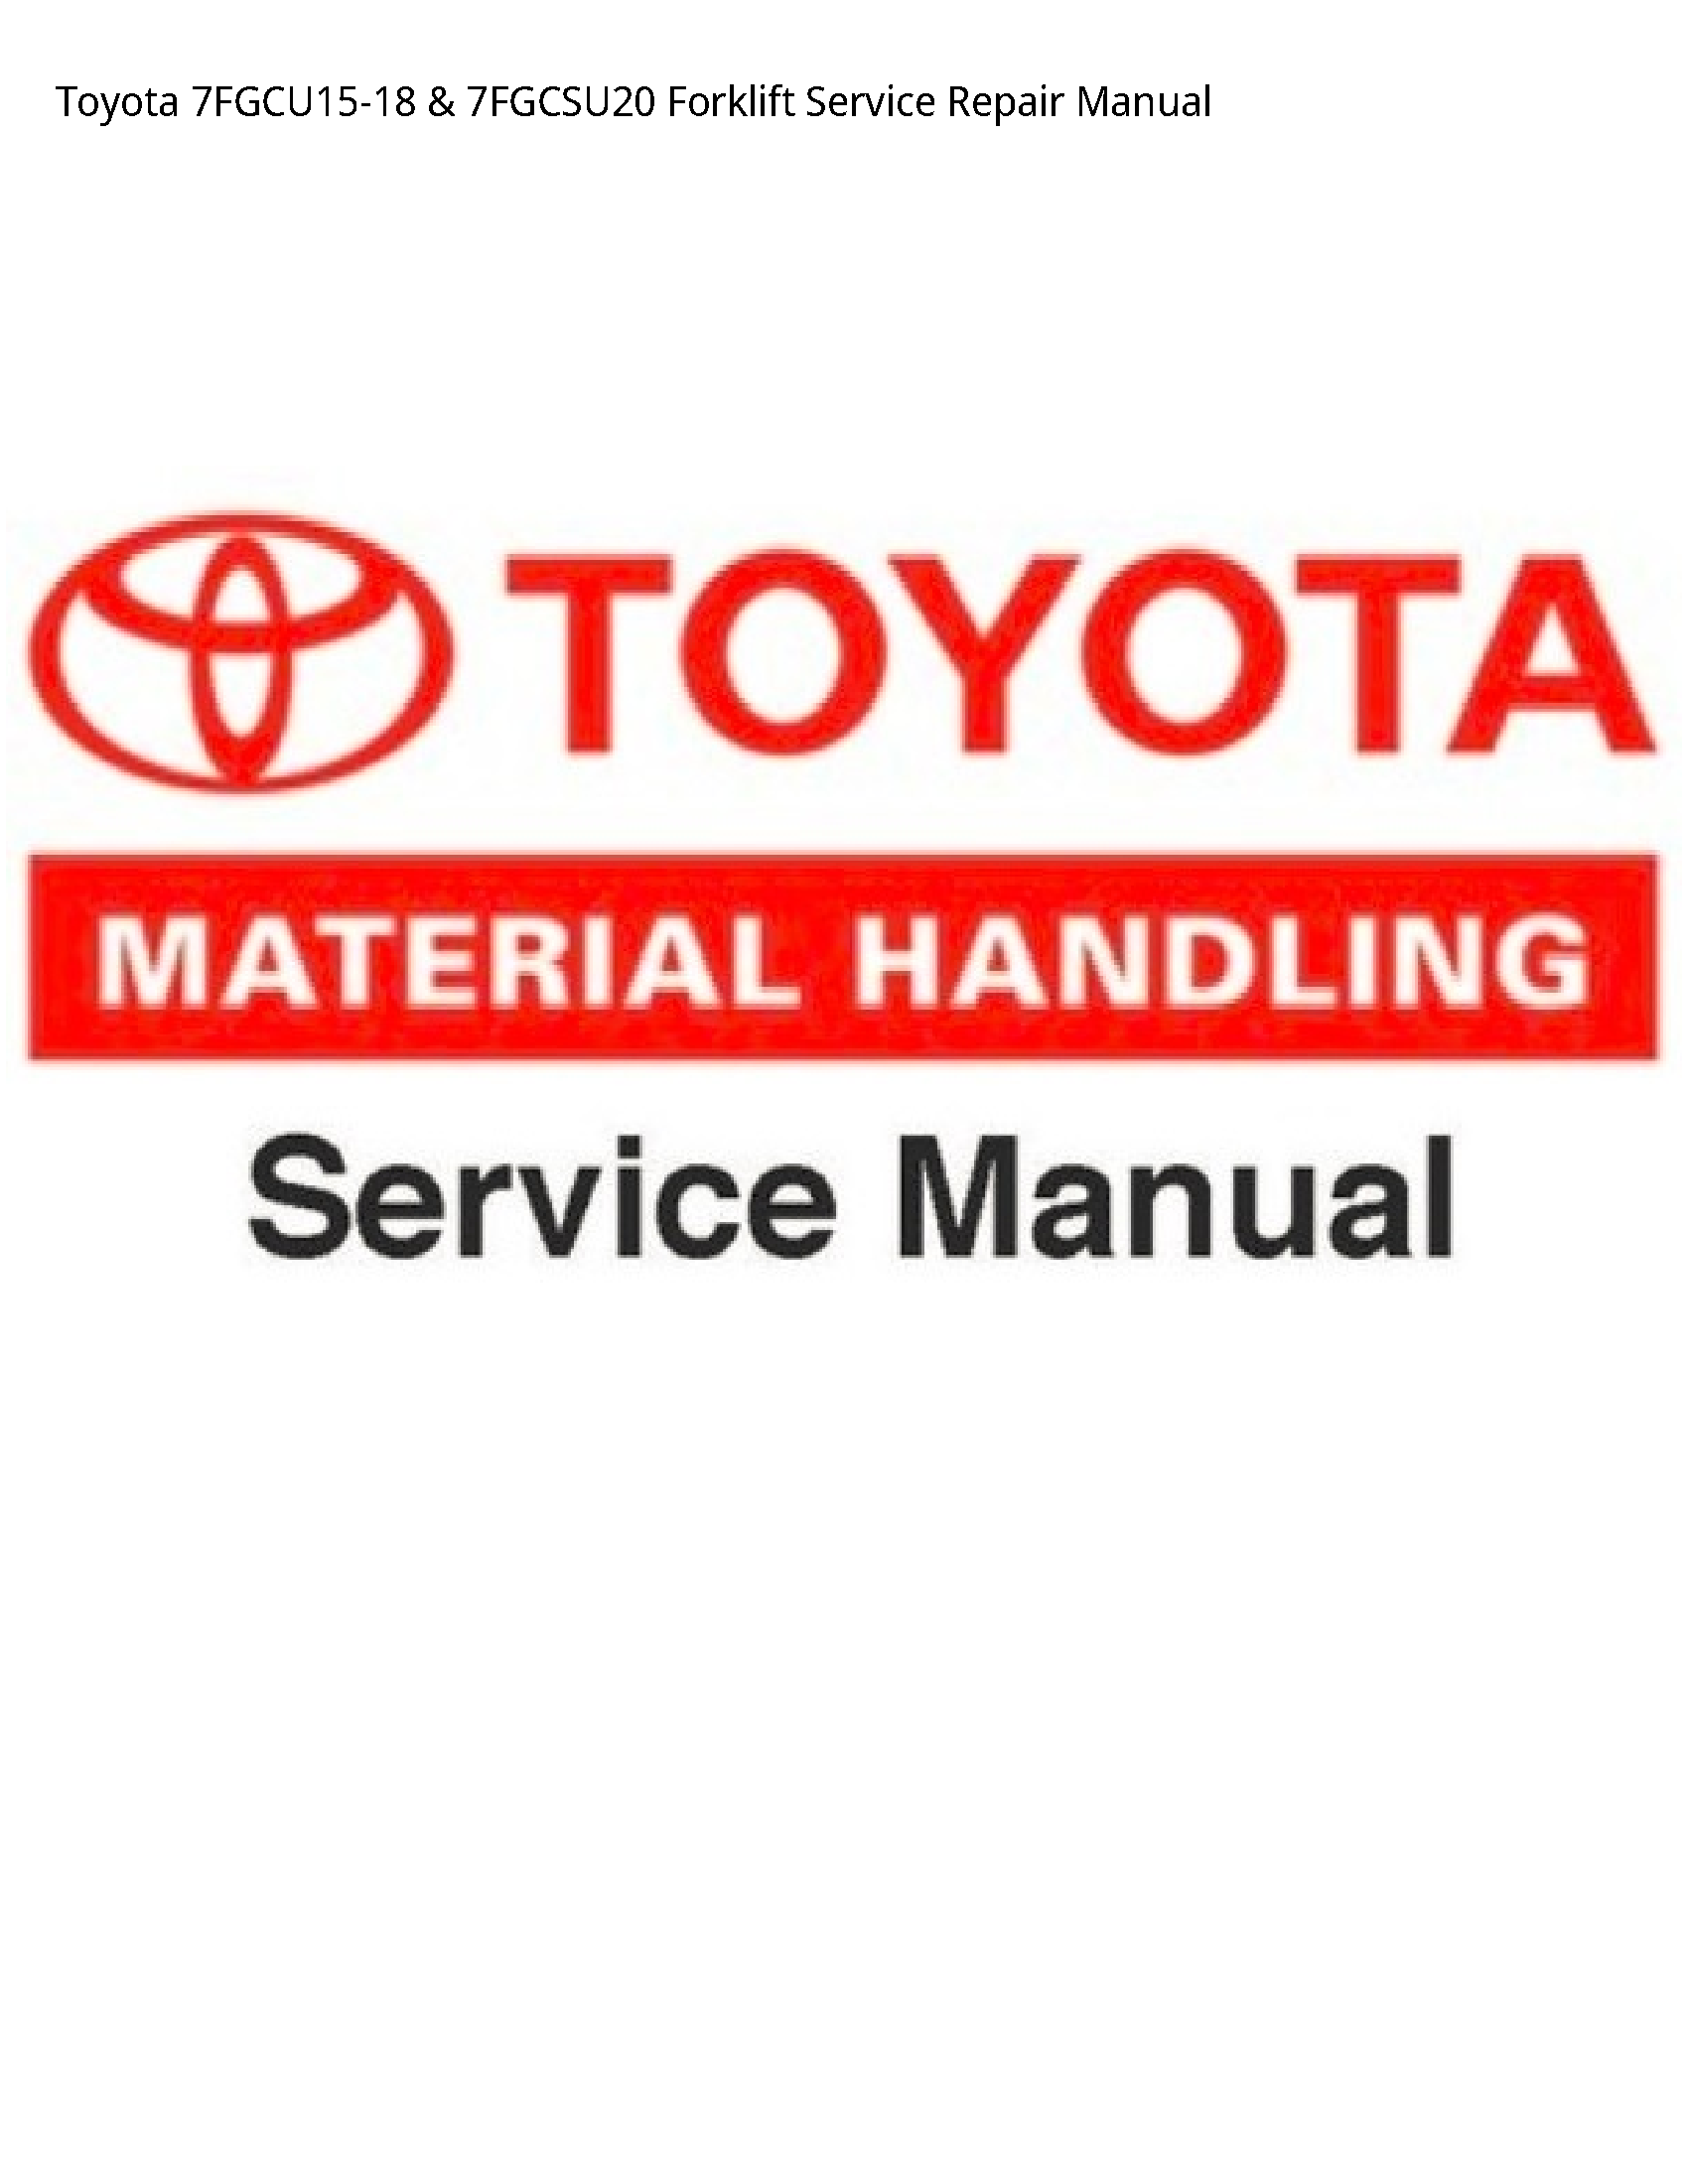 Toyota 7FGCU15-18 Forklift manual